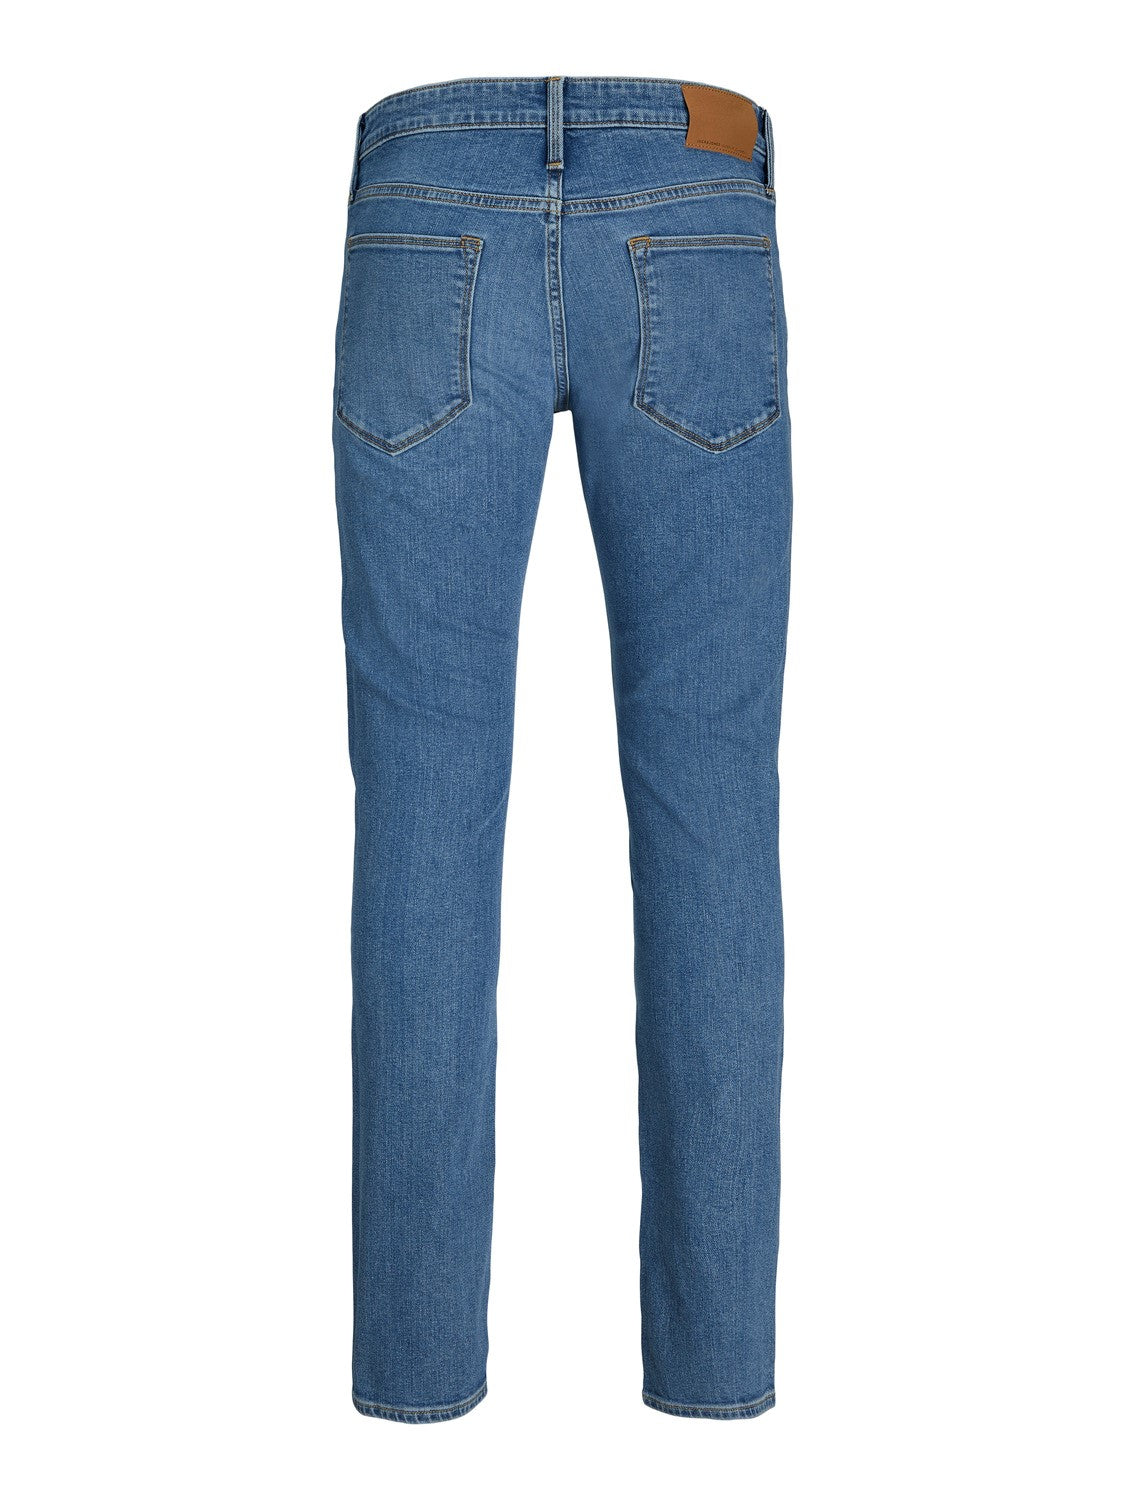 JJIGLENN 377 Slim Fit Jeans